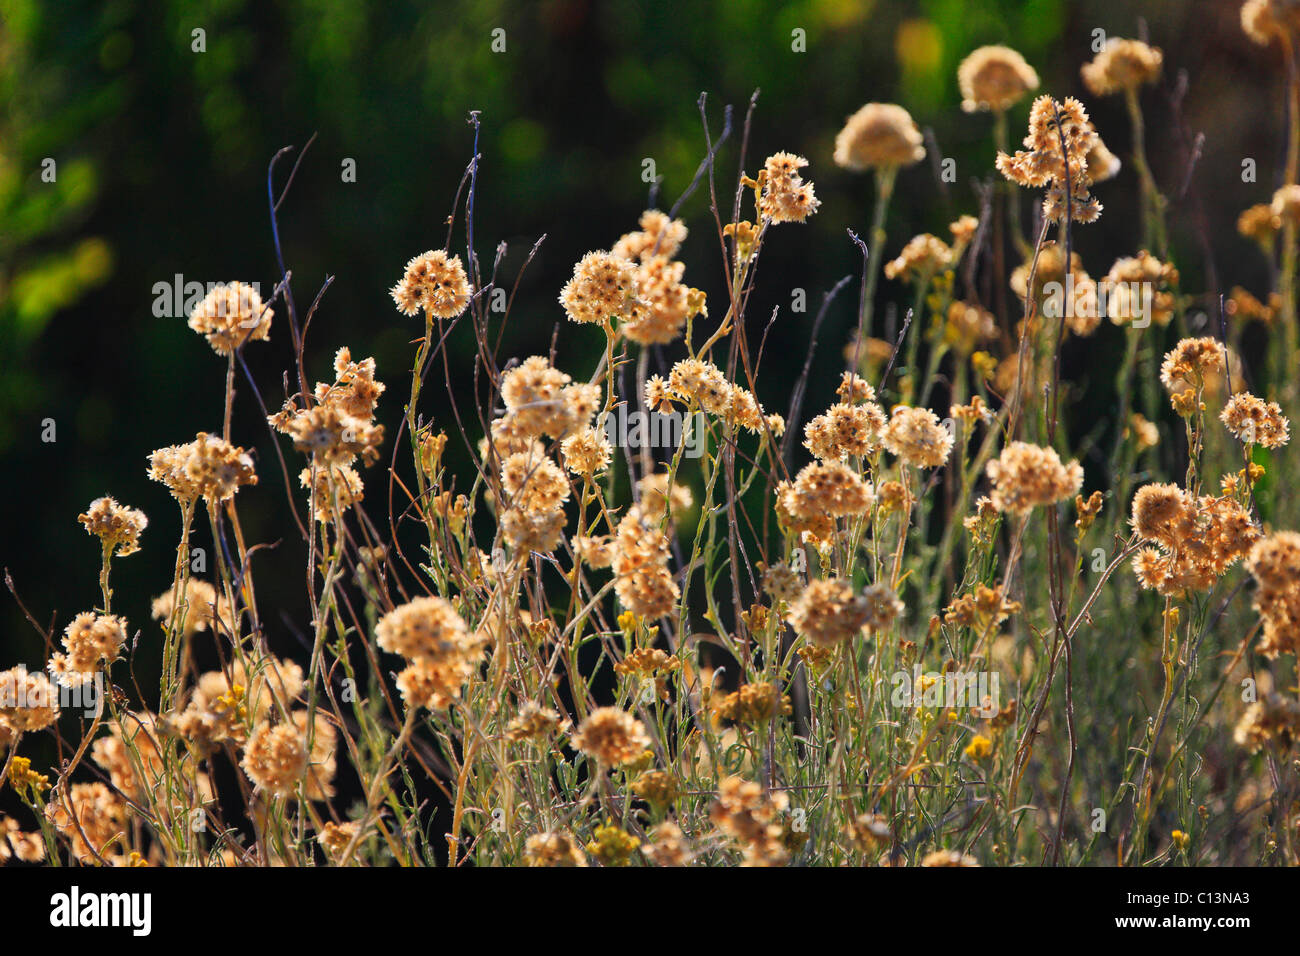 Immortelle flowers, Helichrysum, Everlasting Flower, fragrant plants Stock Photo